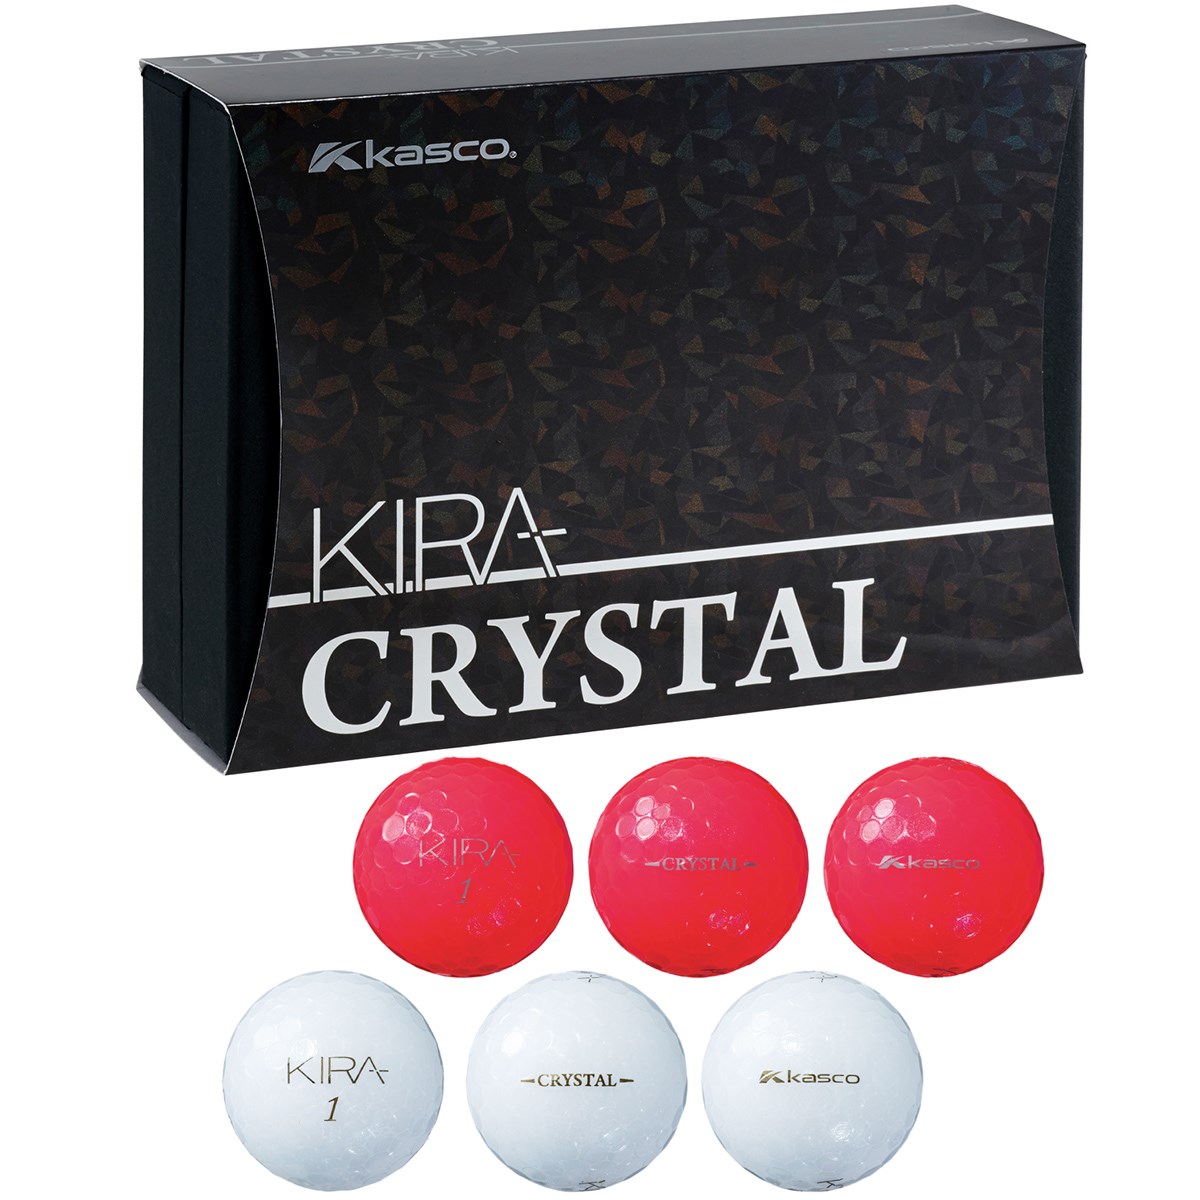 キャスコ KIRA CRYSTAL 紅白ギフト ボール 6個入り ゴルフの大画像